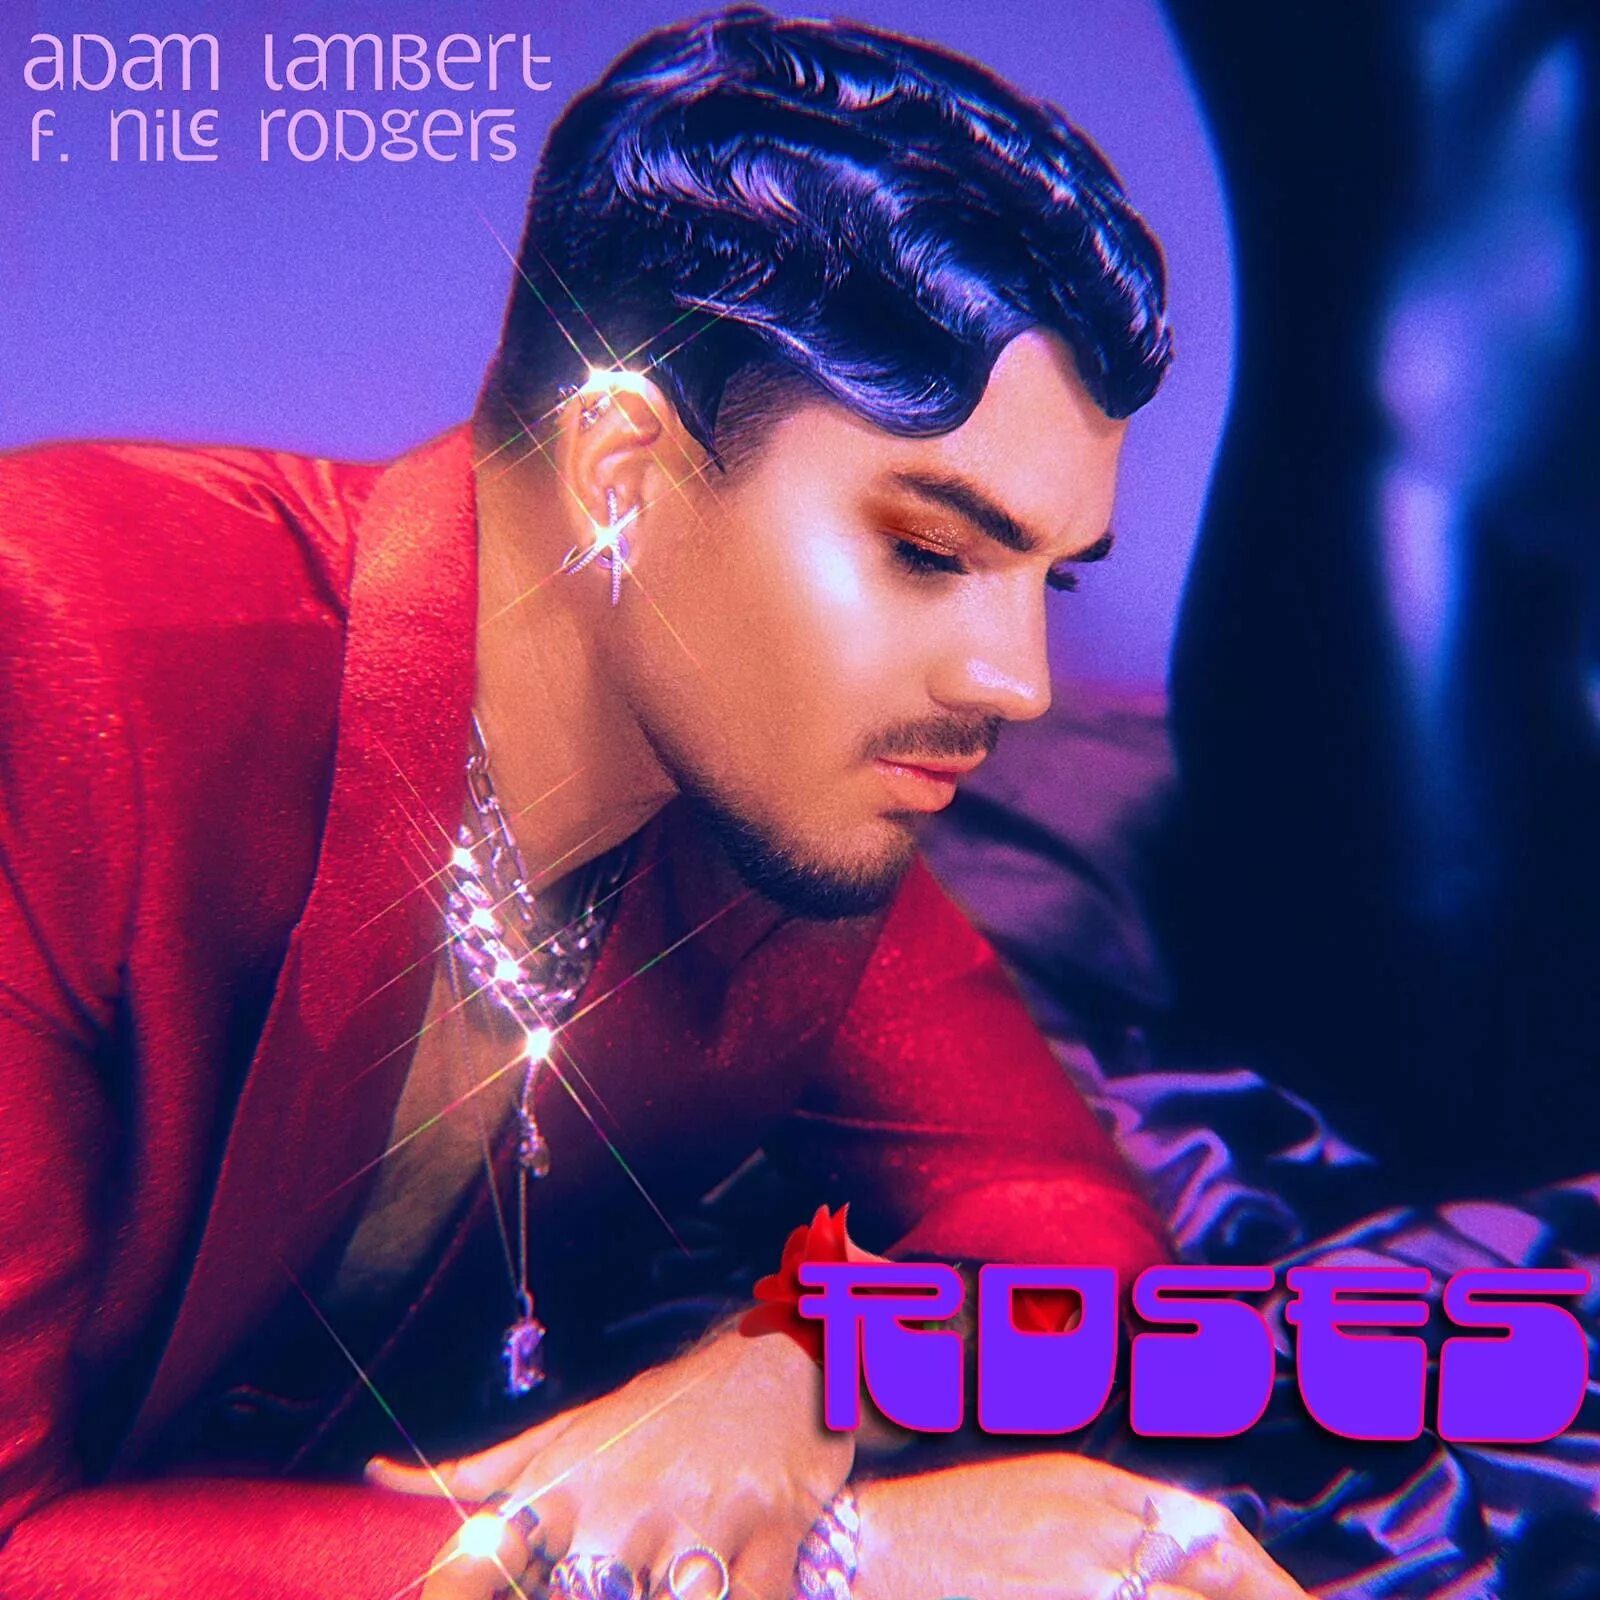 Adam музыка. Adam Lambert Roses обложка сингла.